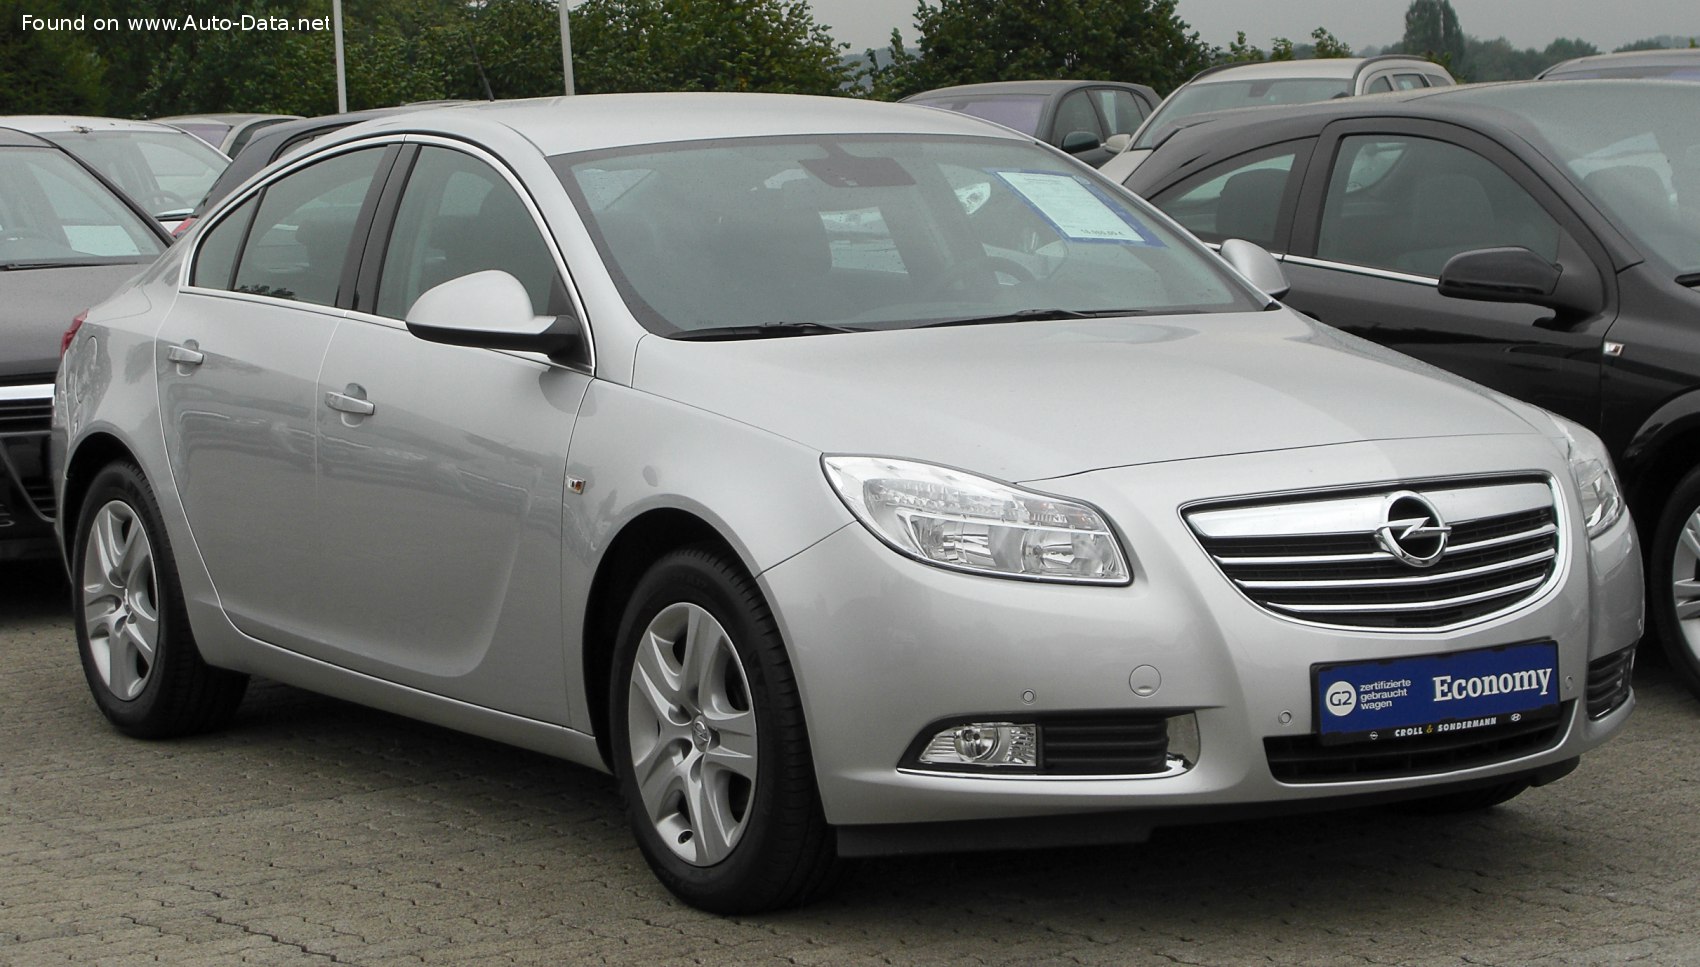 https://www.auto-data.net/images/f103/Opel-Insignia-Sedan-A.jpg